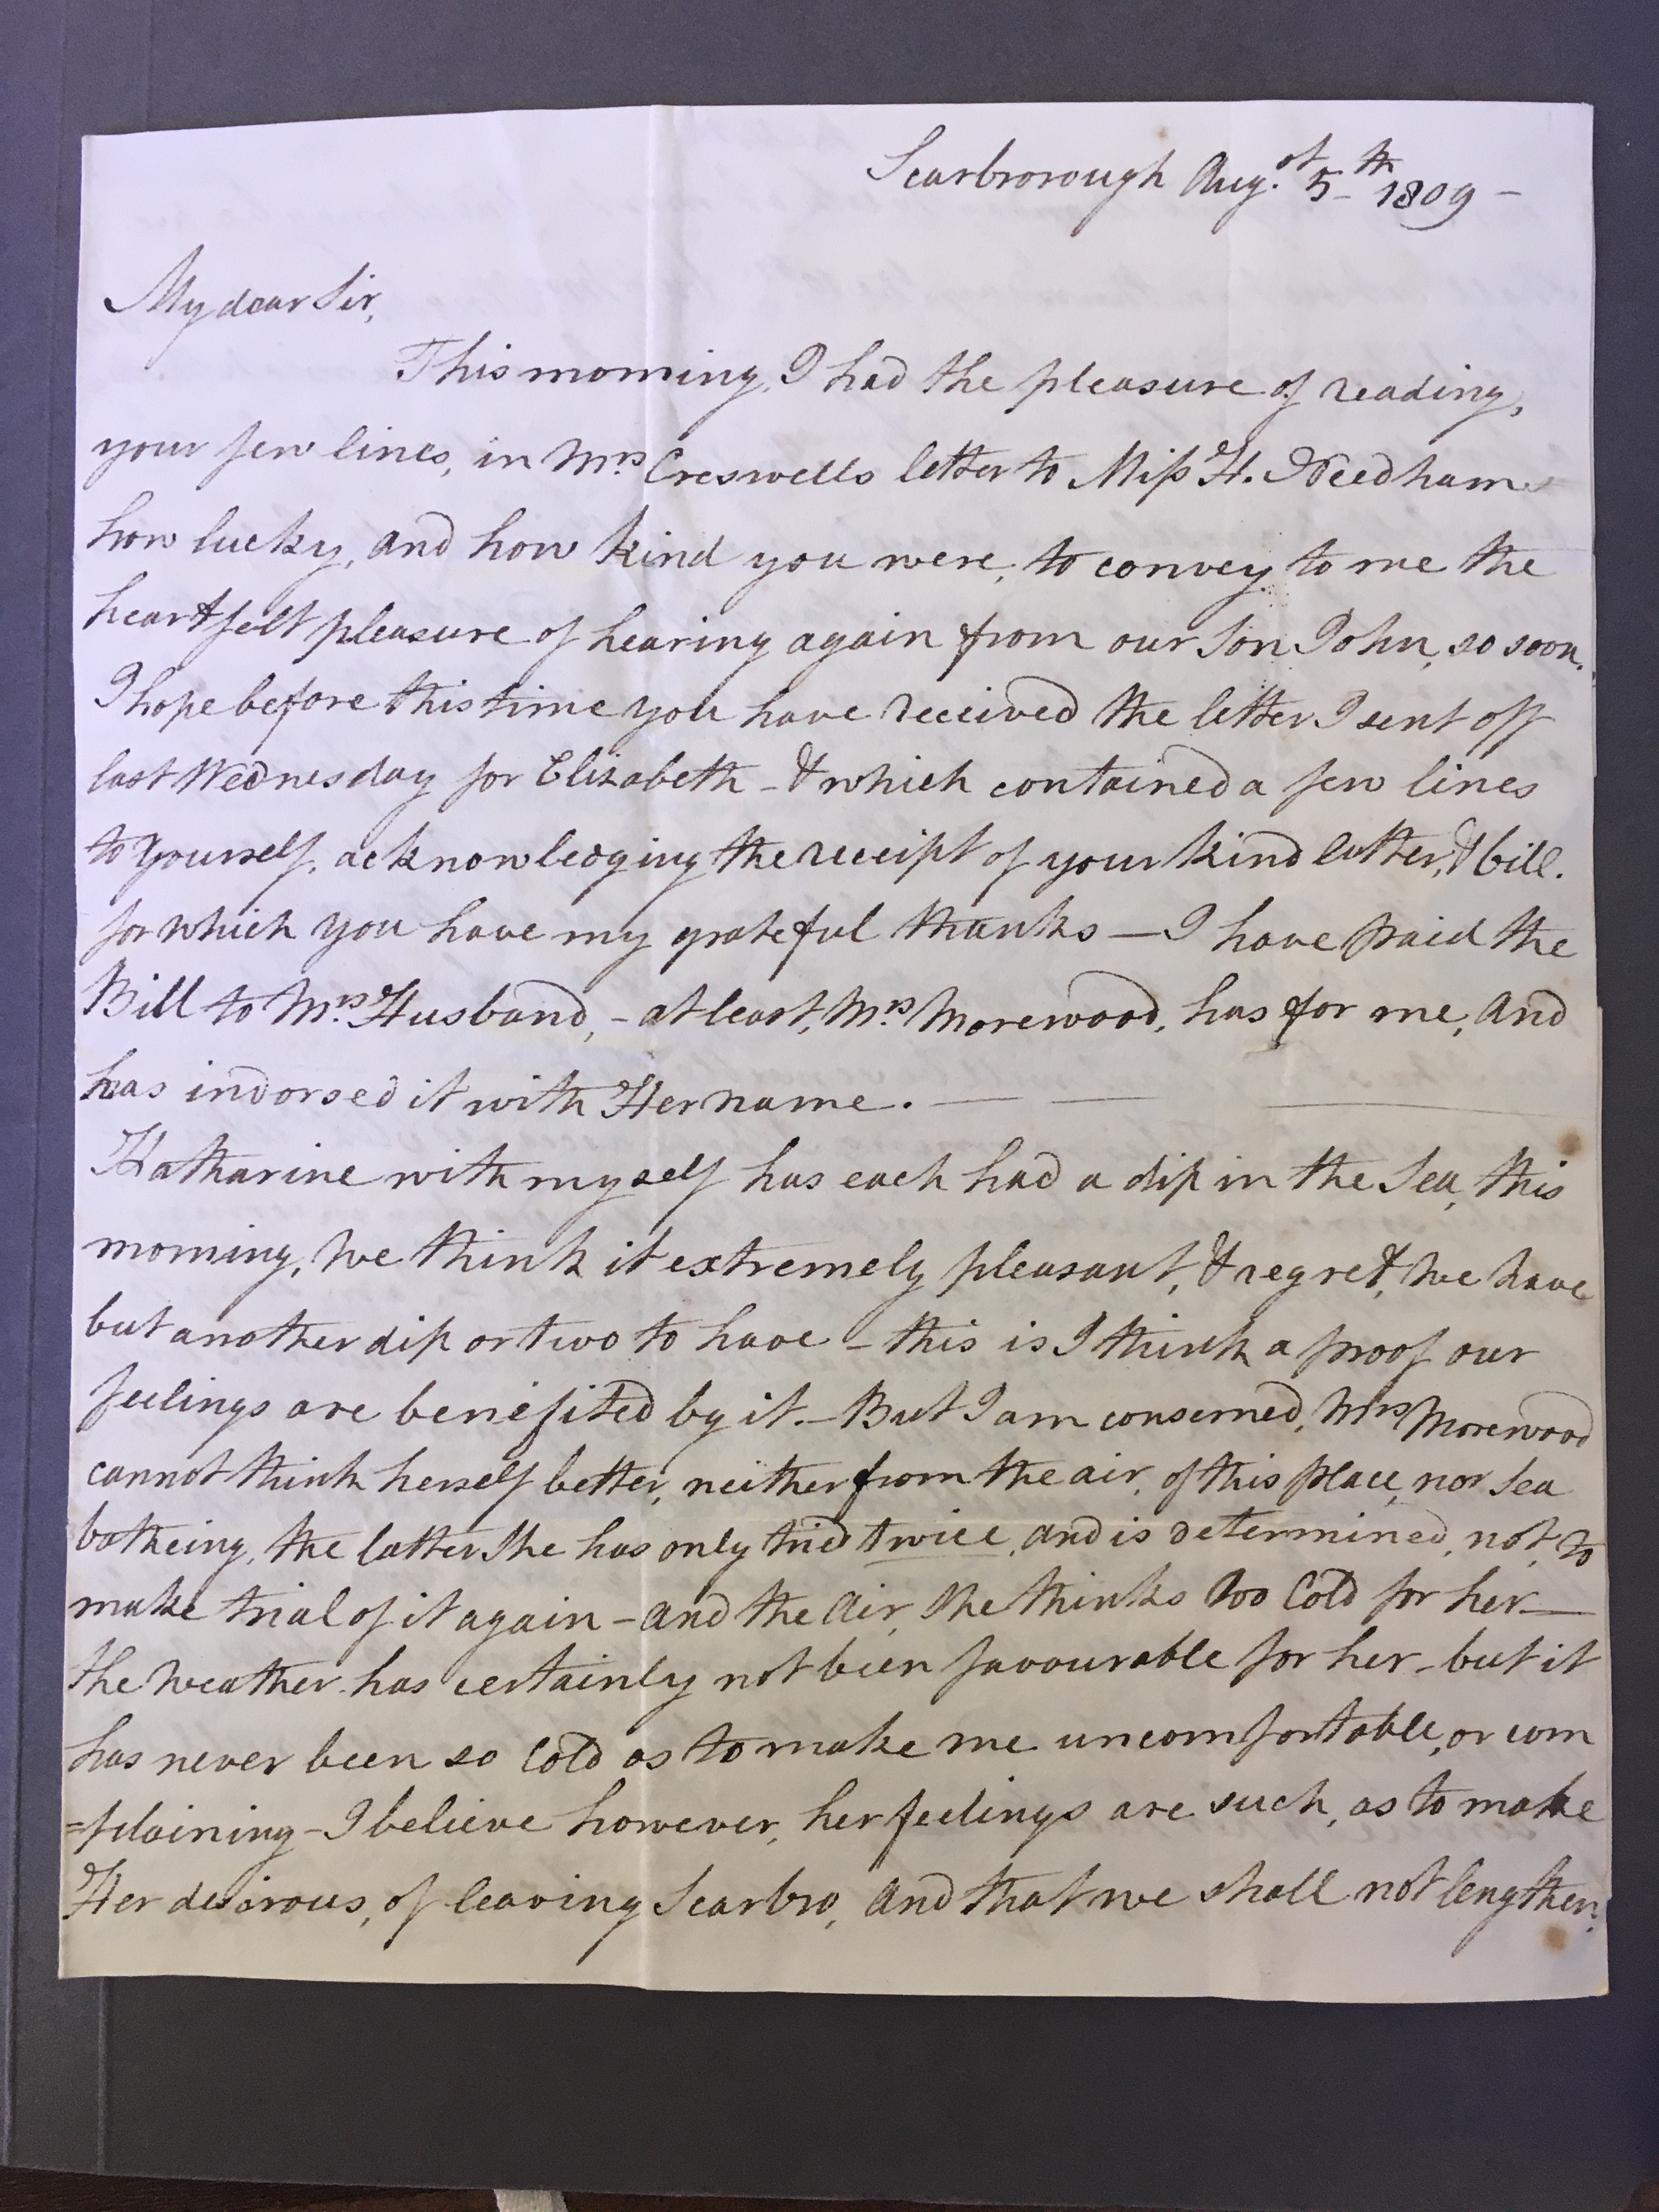 Image #1 of letter: Elizabeth Longsdon (snr) to James Longsdon (snr), 5 August 1809